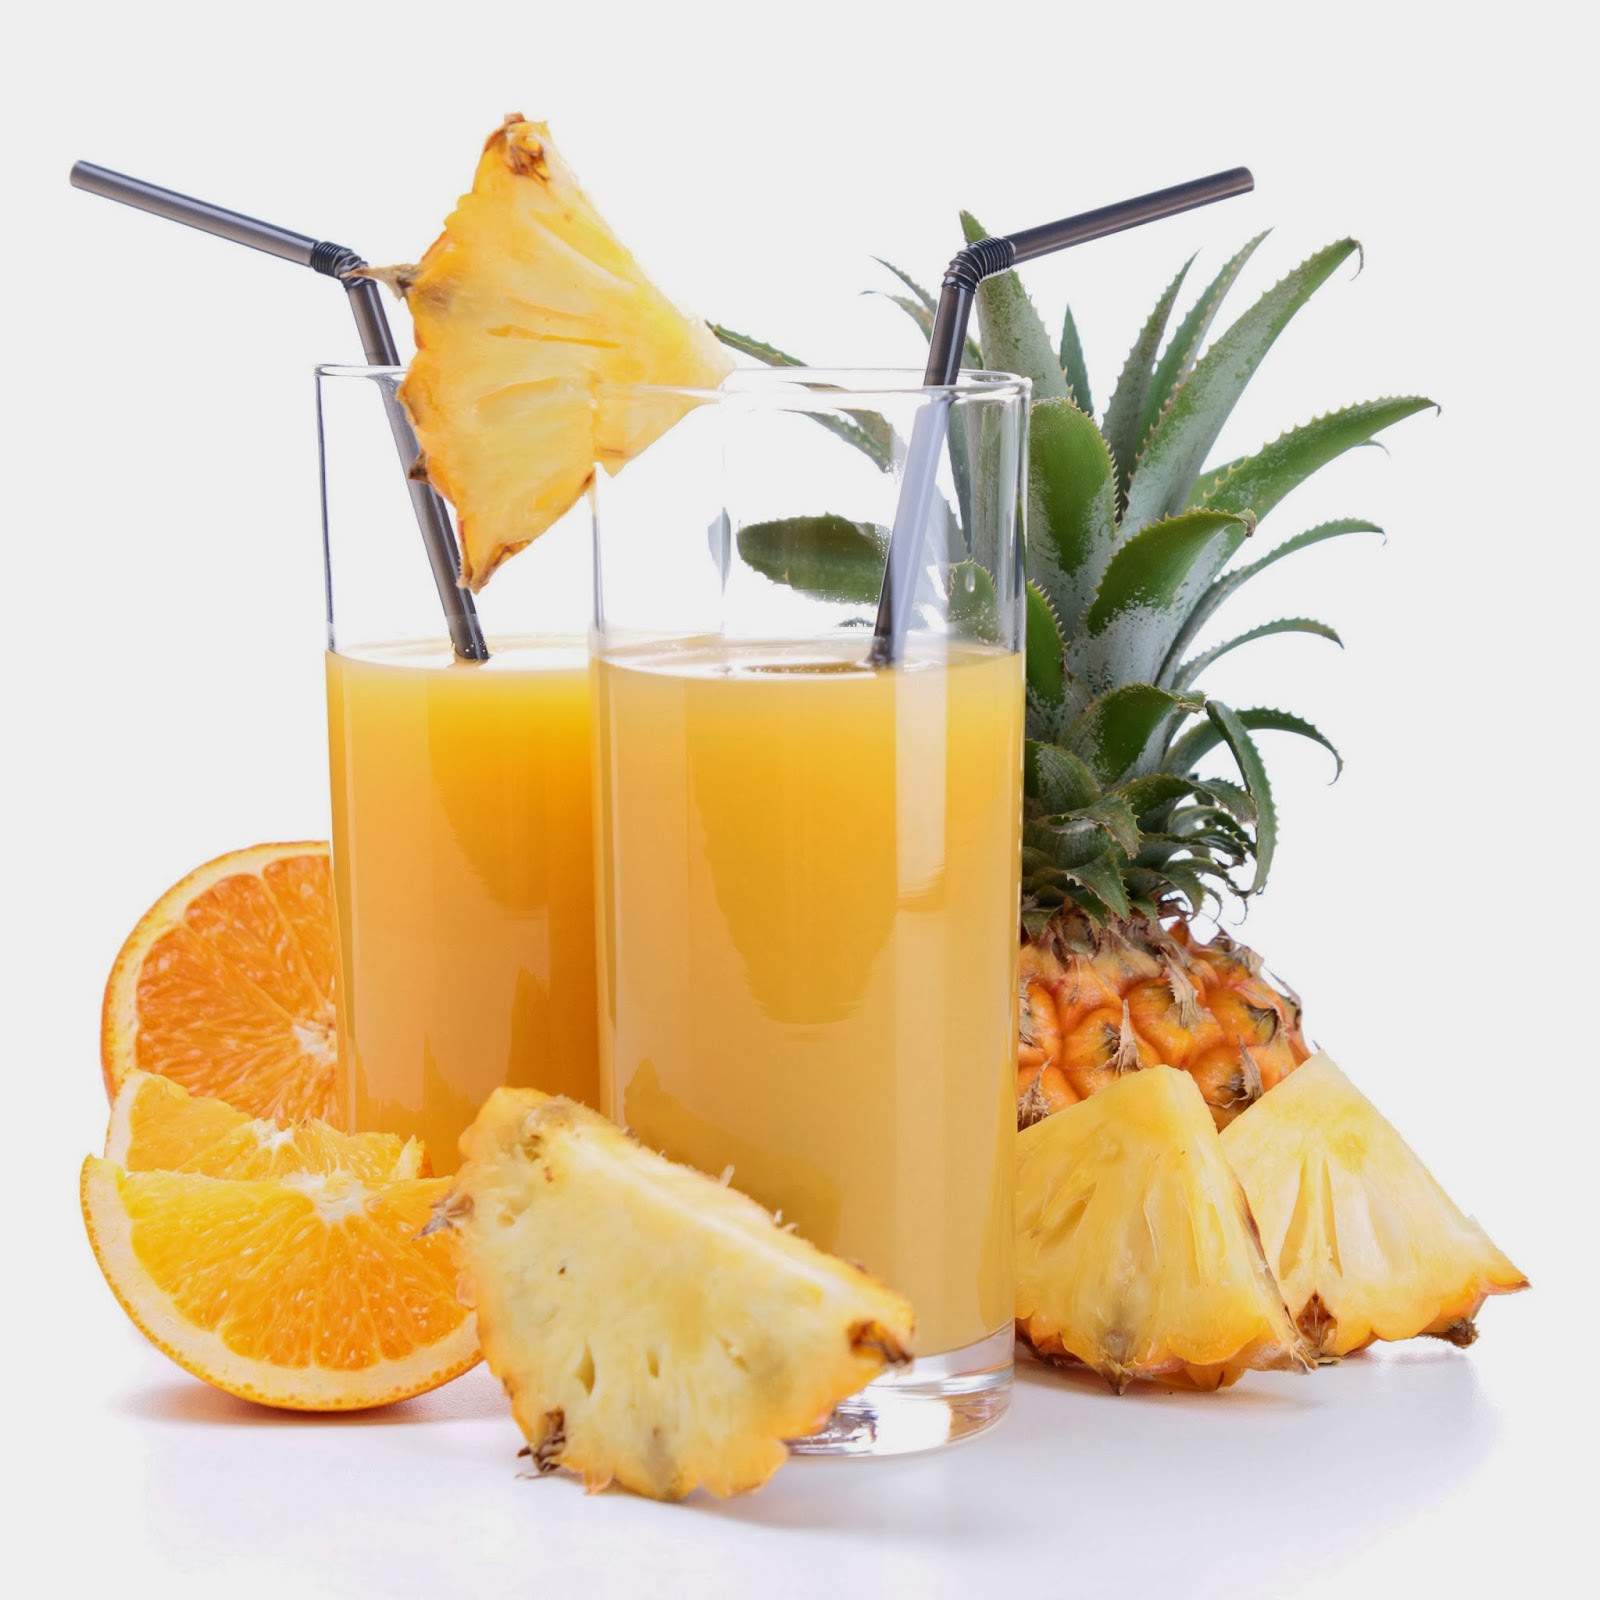 Résultat de recherche d'images pour "santé ananas"